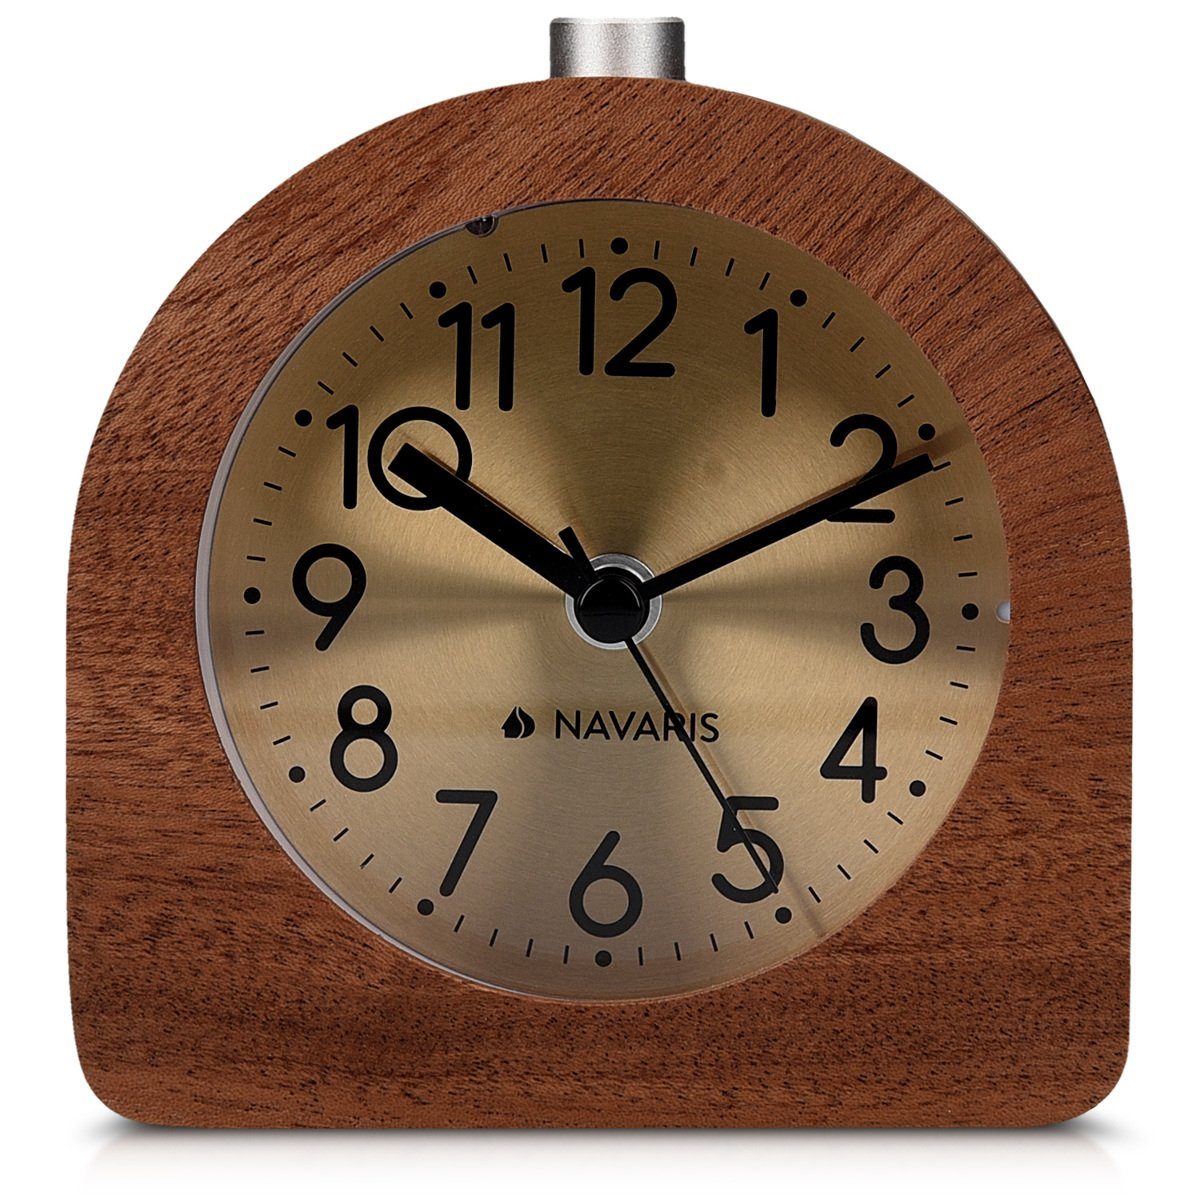 Snooze, Navaris Halbrund/Quadrat Holz Reisewecker Uhr Retro mit Wecker Dunkelbraun Analog